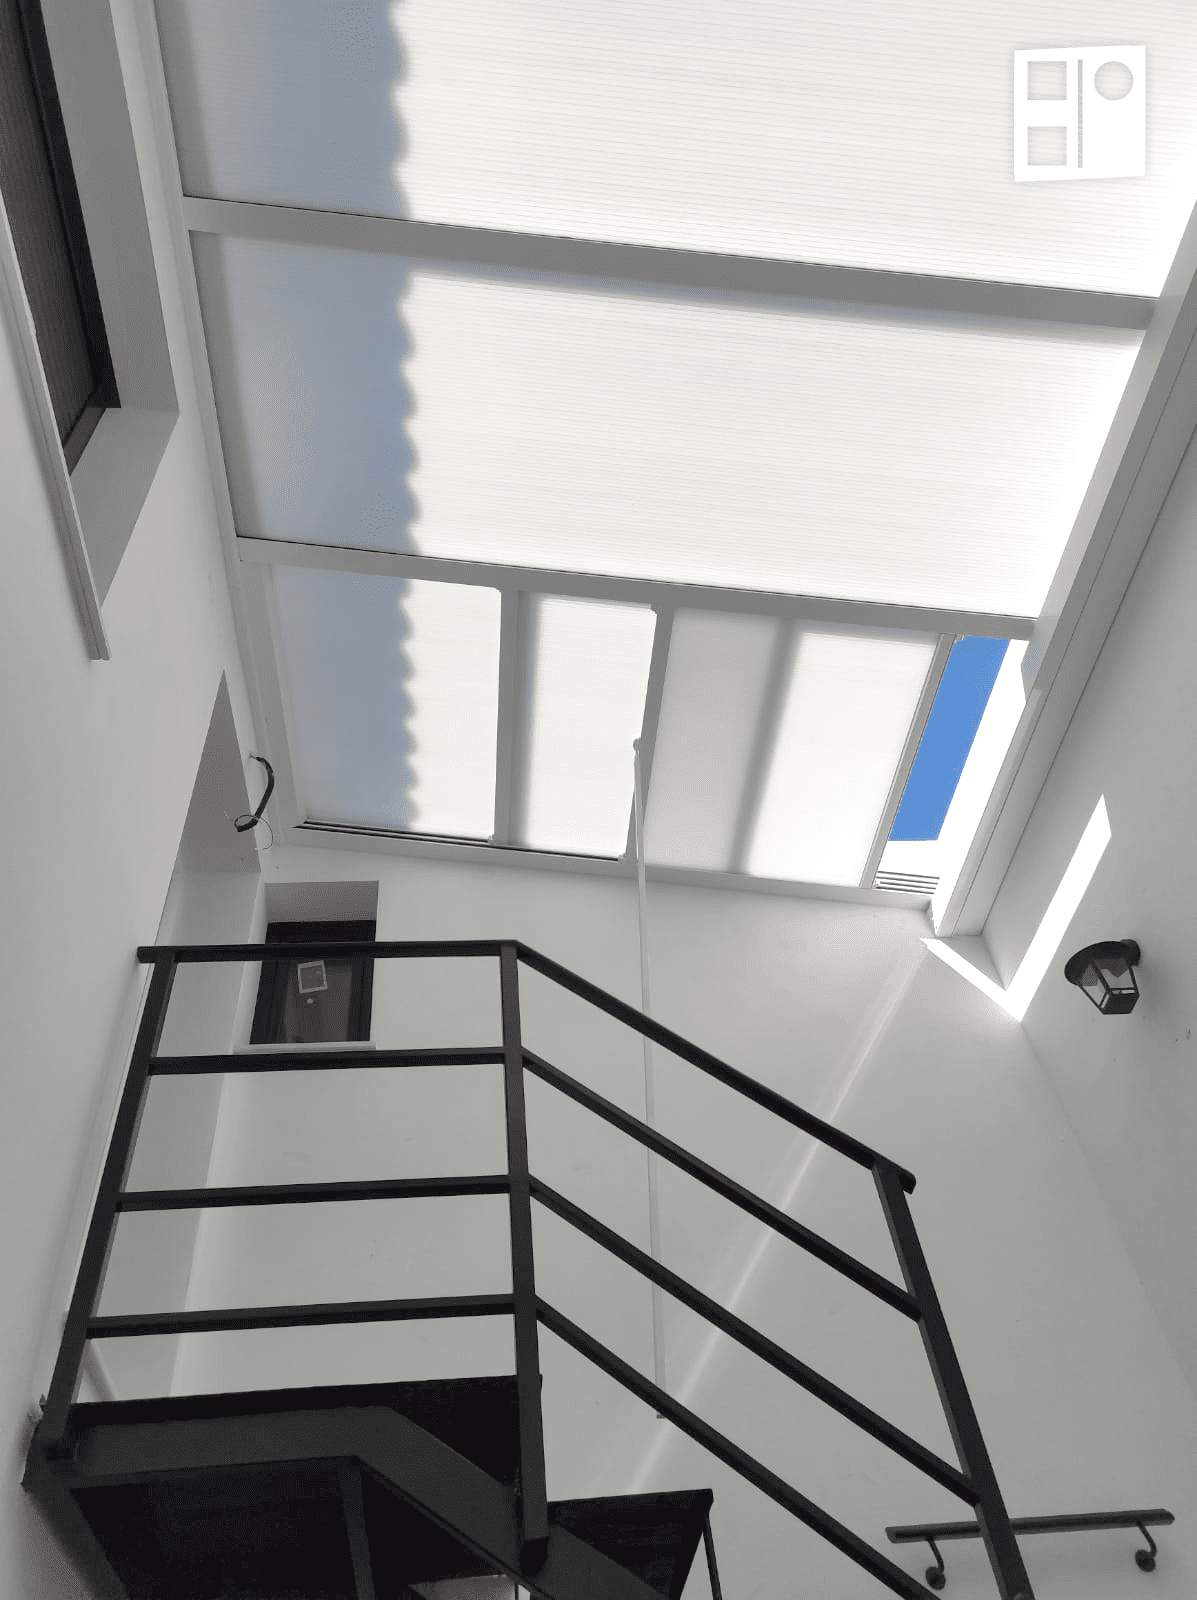 Escalera de hierro negro con barandillas bajo un tragaluz en un espacio interior luminoso.